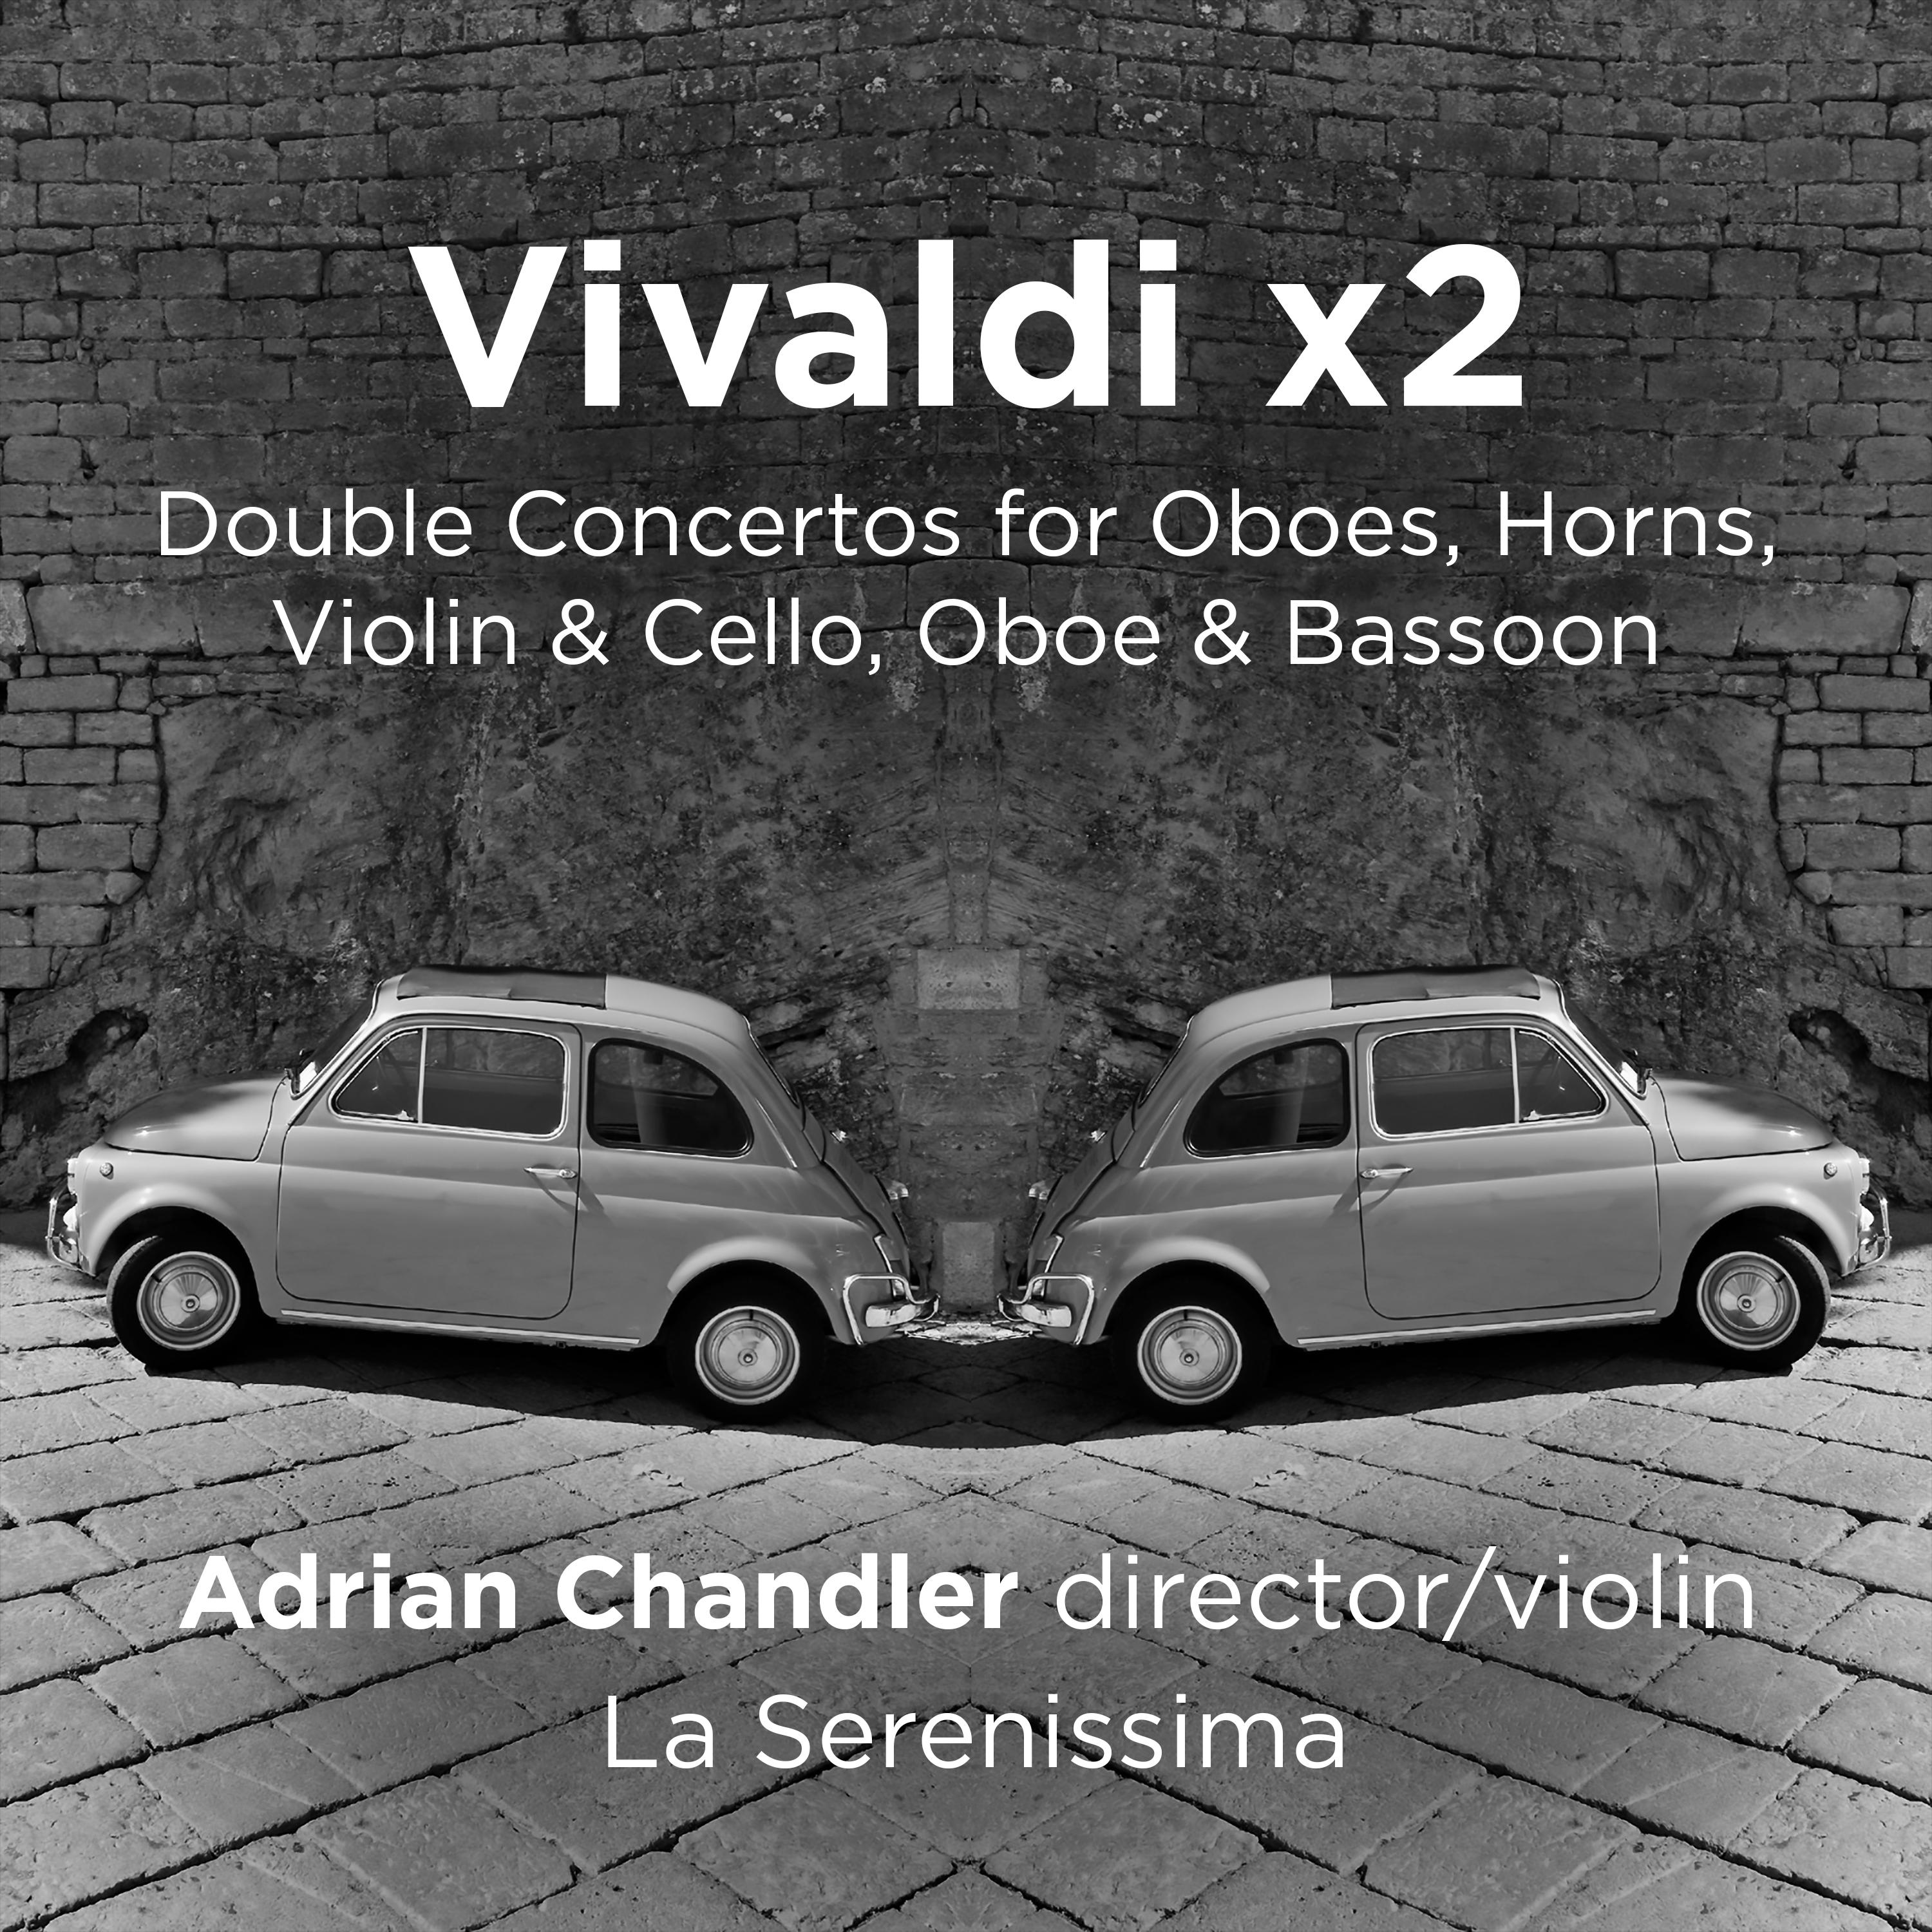 Concerto for Violin, Cello, Strings and Continuo in A Major, RV. 546: II. Andante